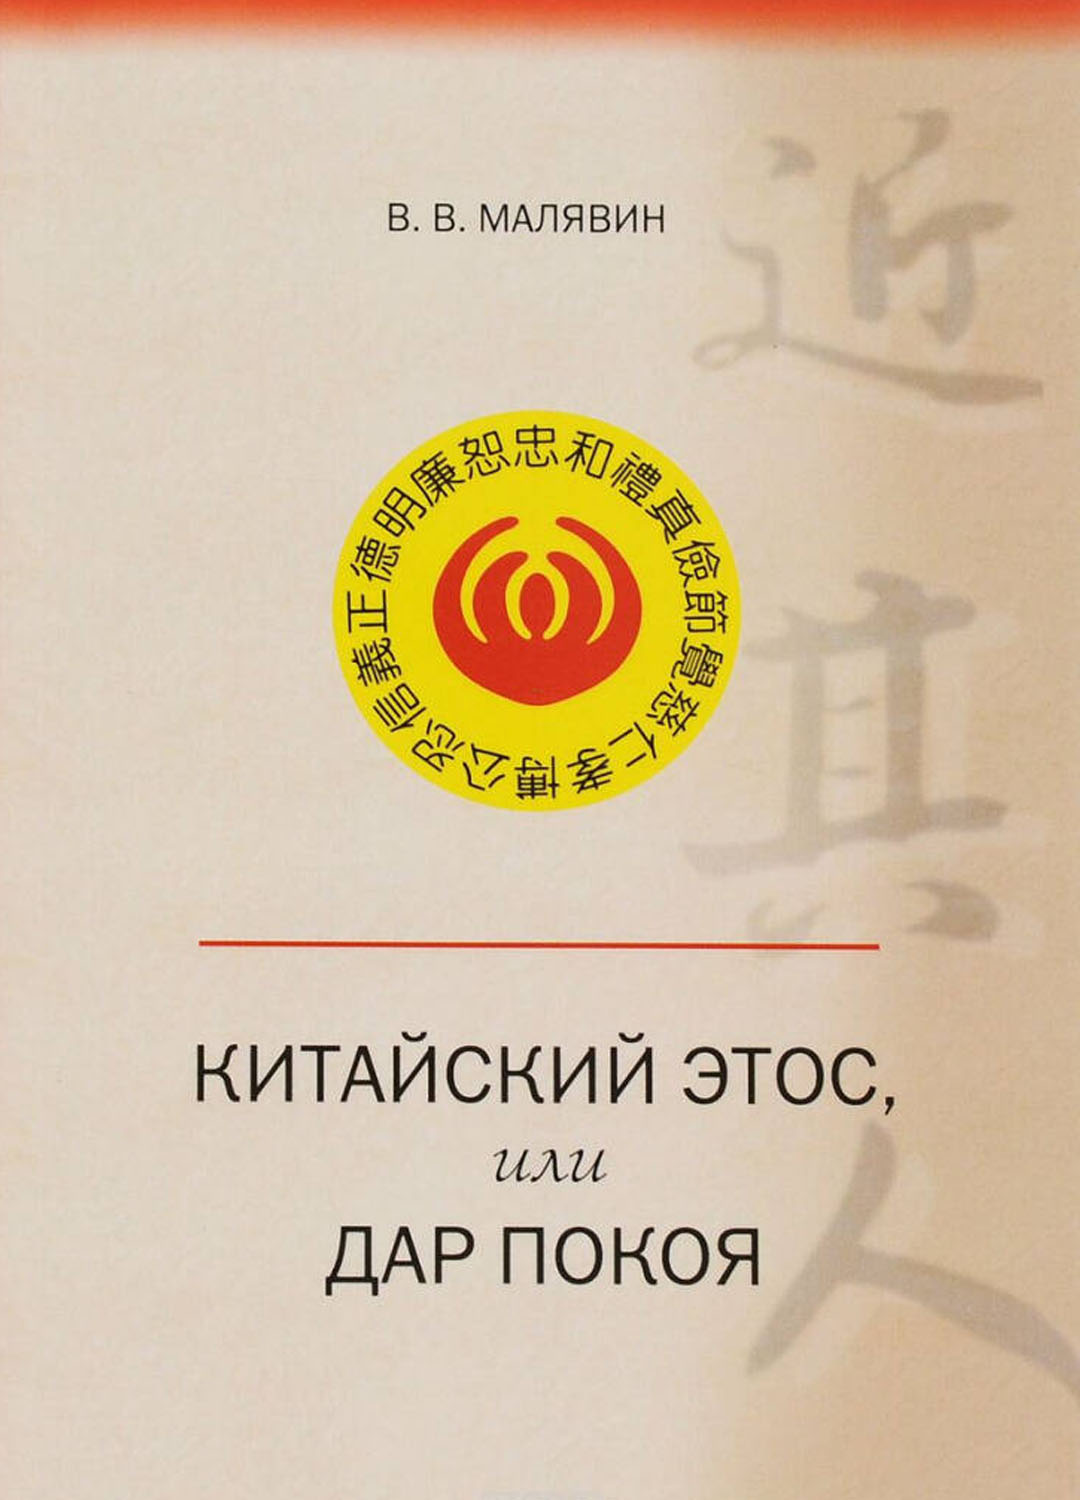 Продажа книги: «Китайский этос, или Дар покоя» — Владимир Малявин, 2016 г.